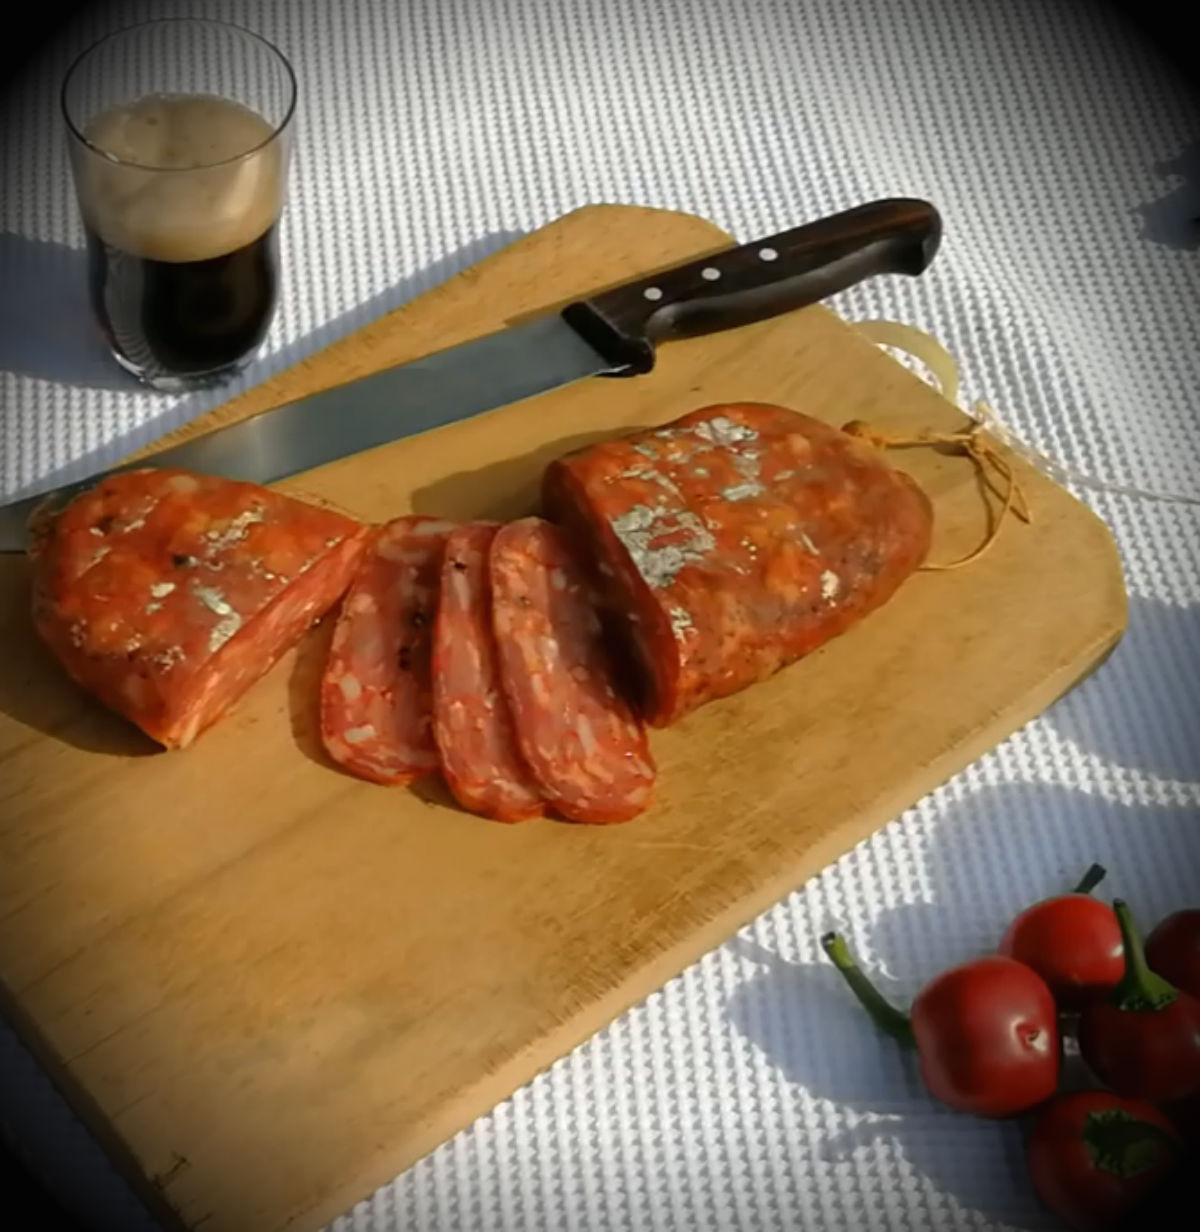 soppressata calabrese fatta in casa, how to make soppressata calabrese original italian salami recipe, cuoredicioccolato